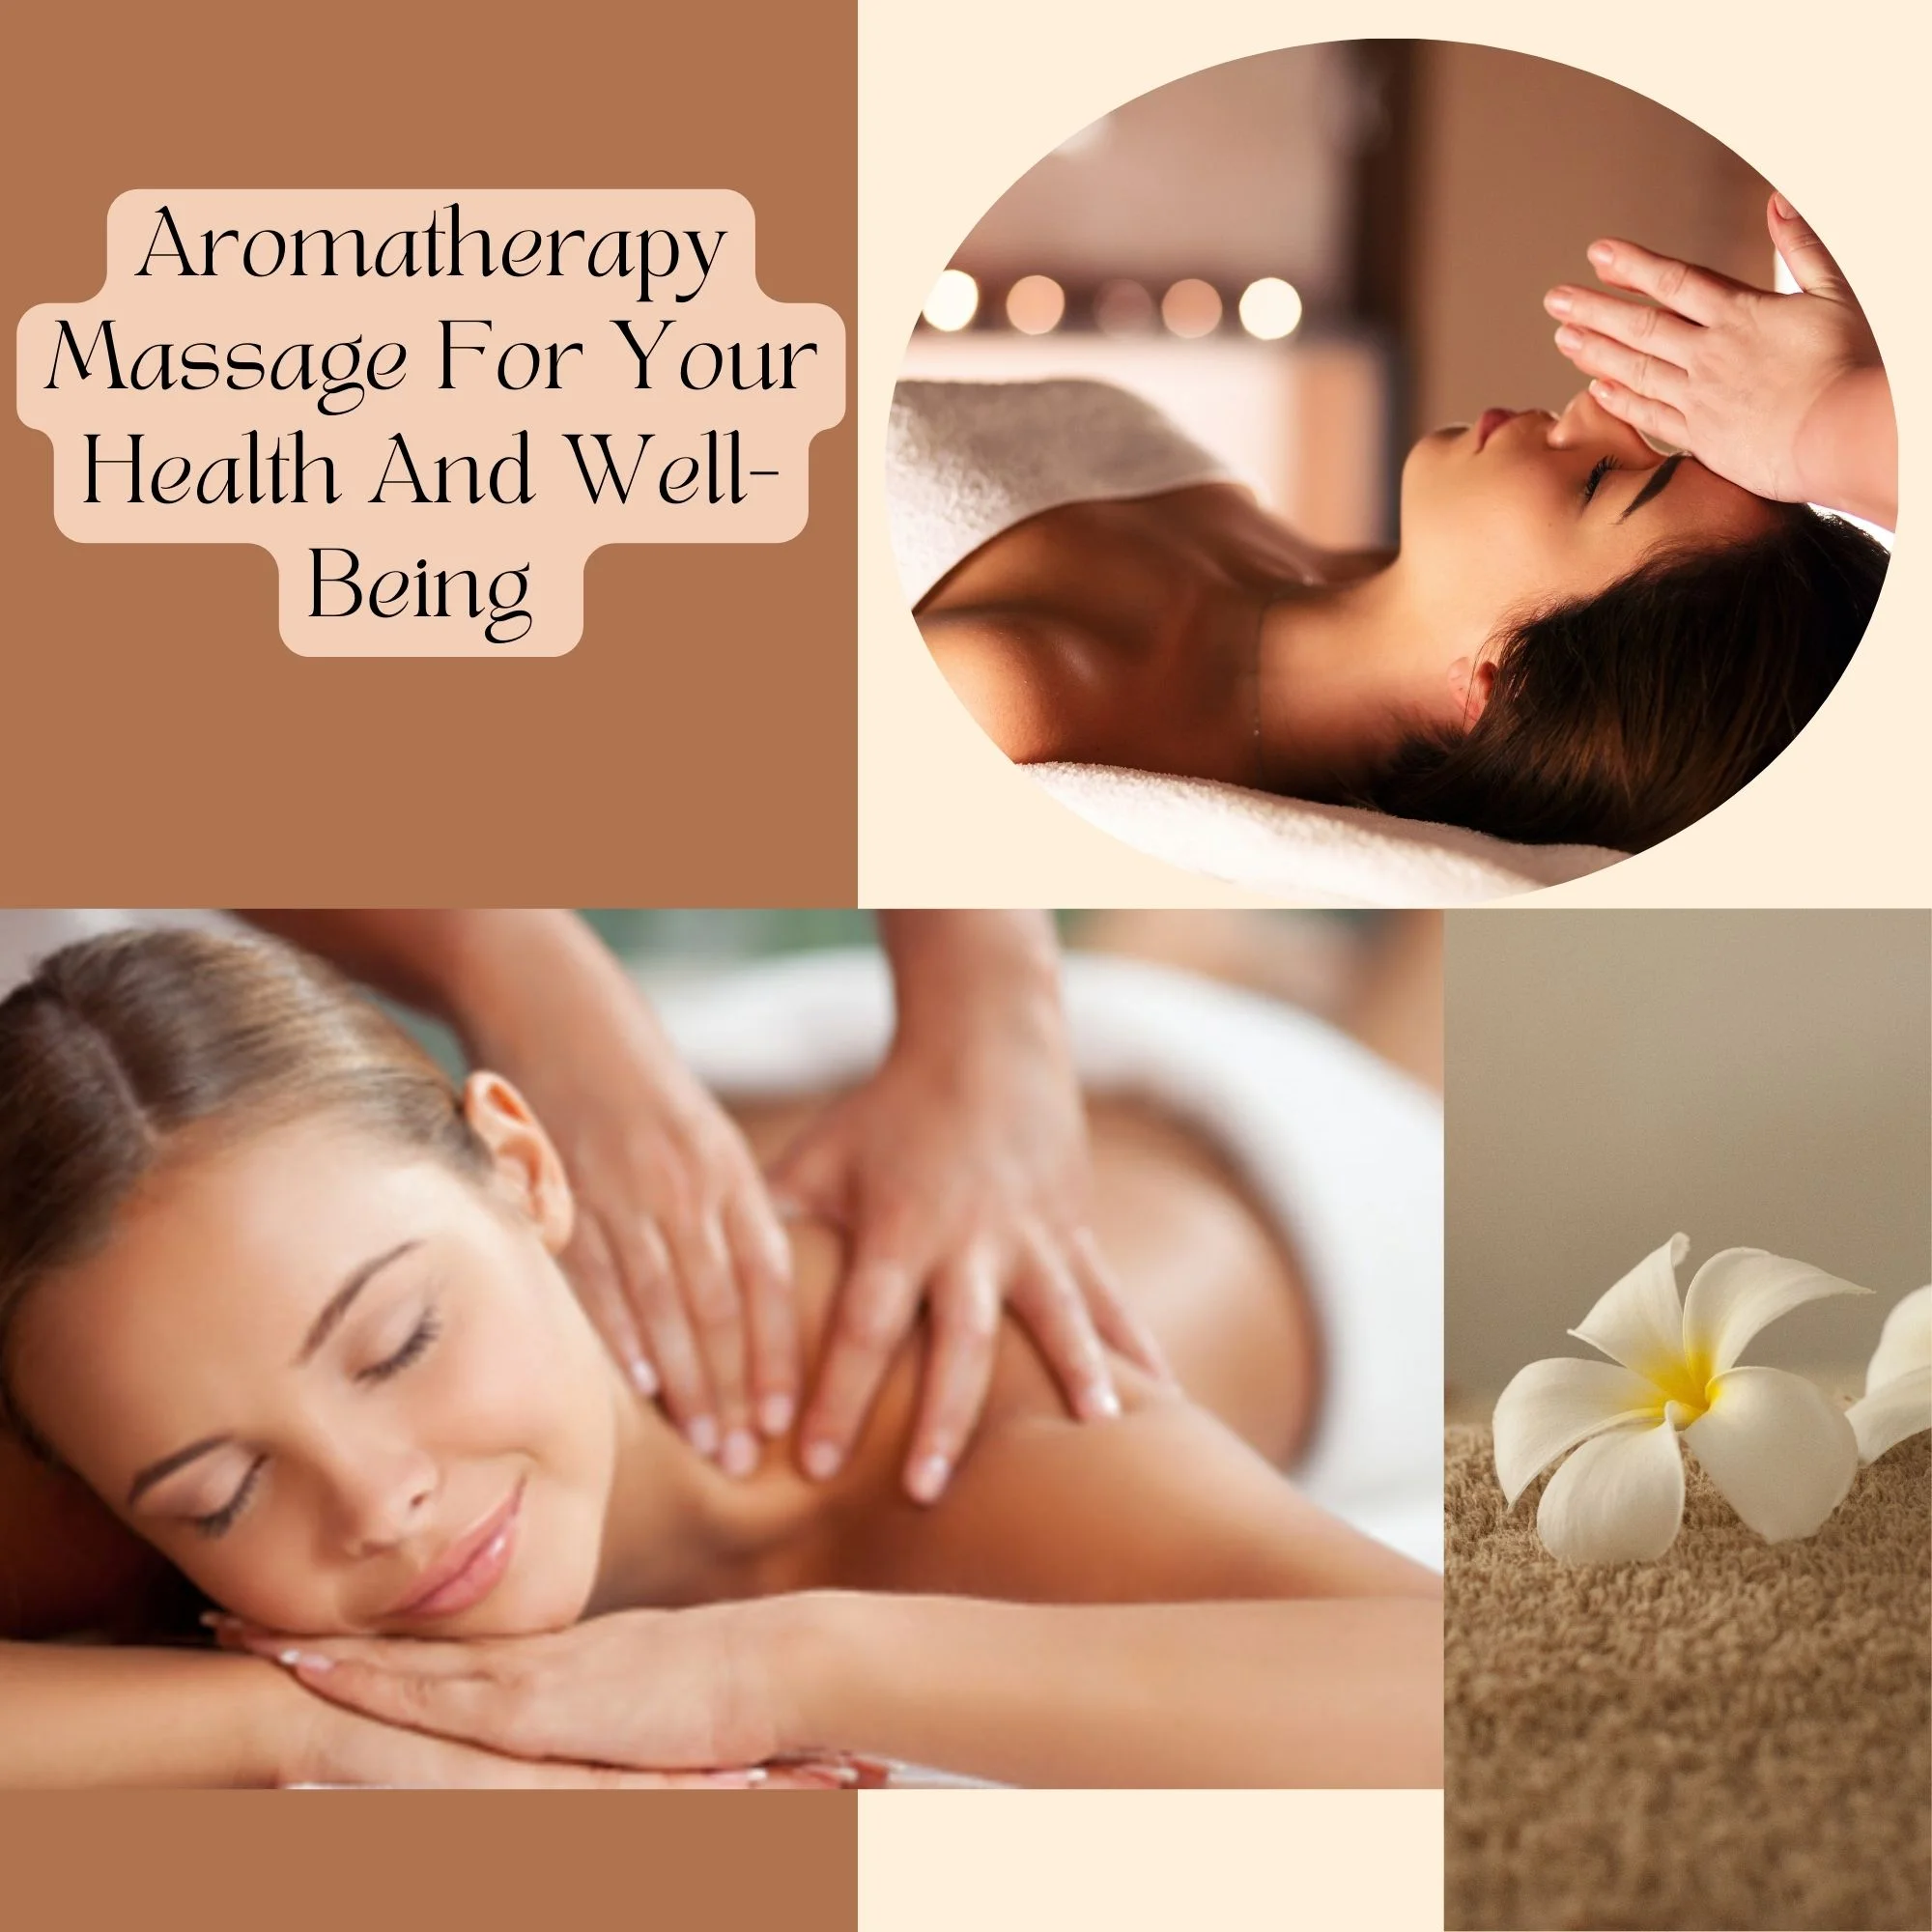 Massage oil uses